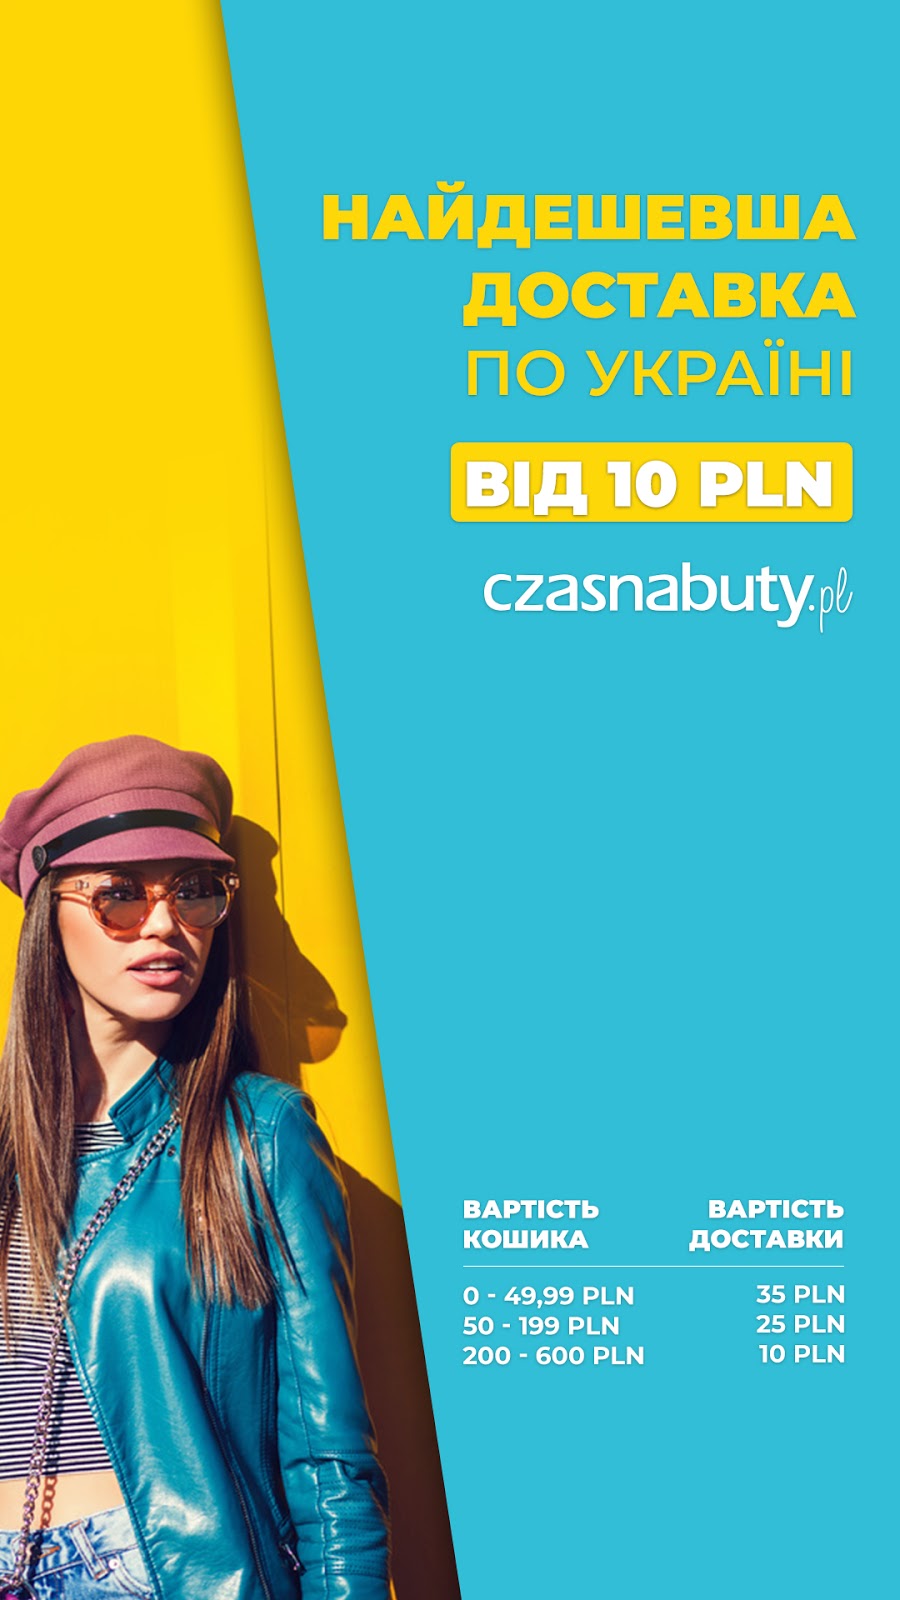 Czasnabuty теперь отправляет посылки в Украину с помощью сервиса новой почты